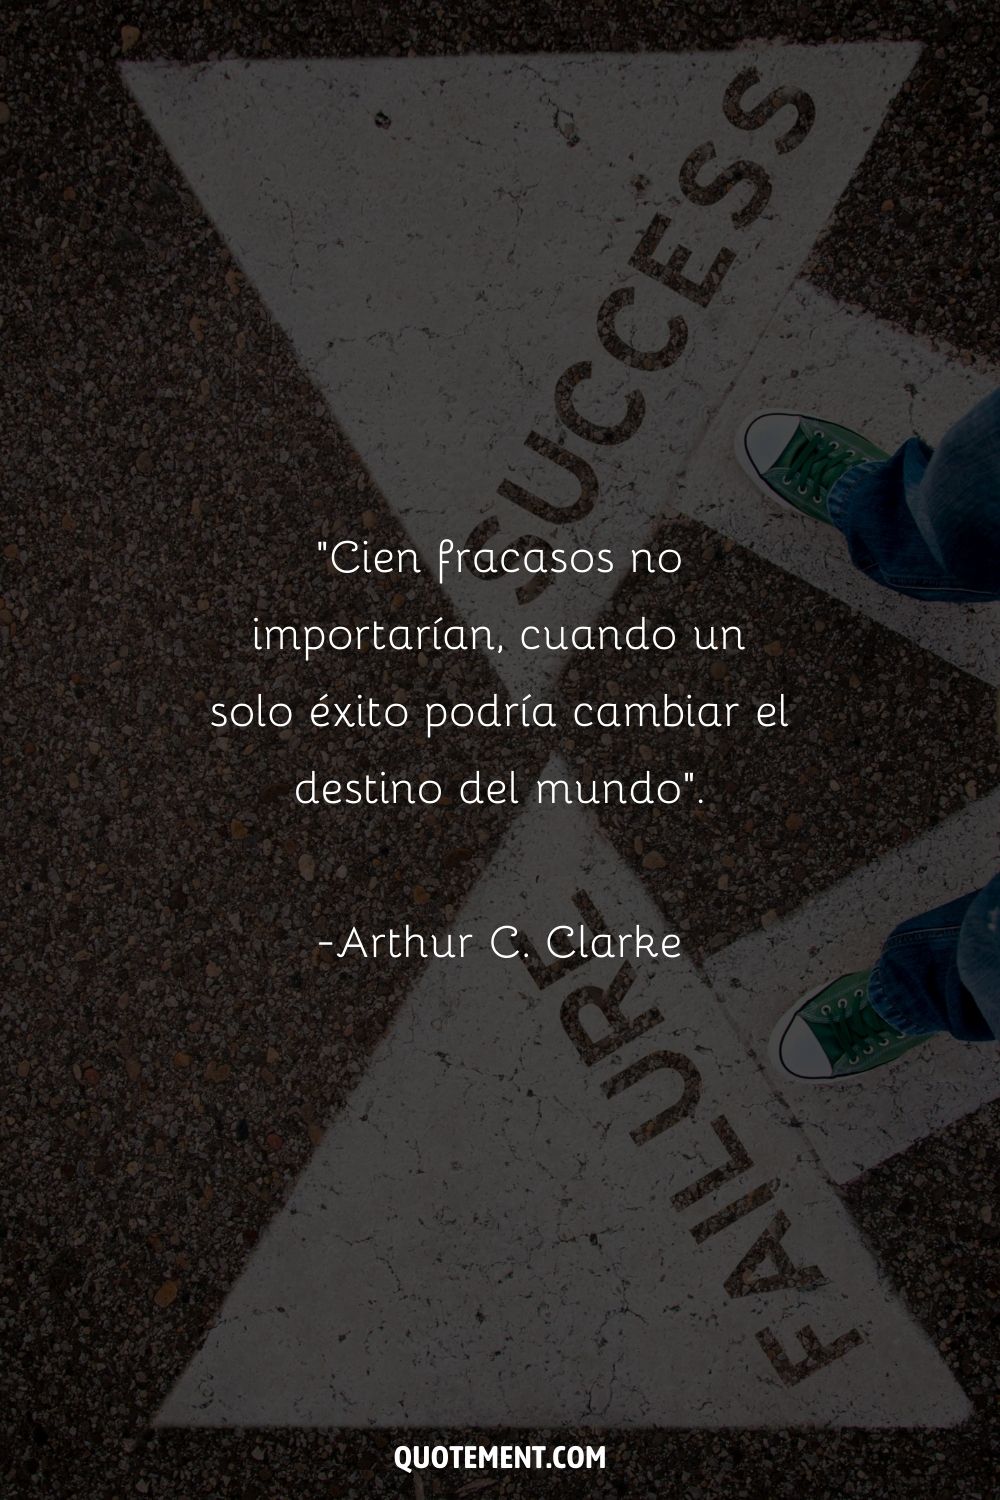 "Cien fracasos no importarían, cuando un solo éxito podría cambiar el destino del mundo". - Arthur C. Clarke, 2001 Una Odisea del Espacio